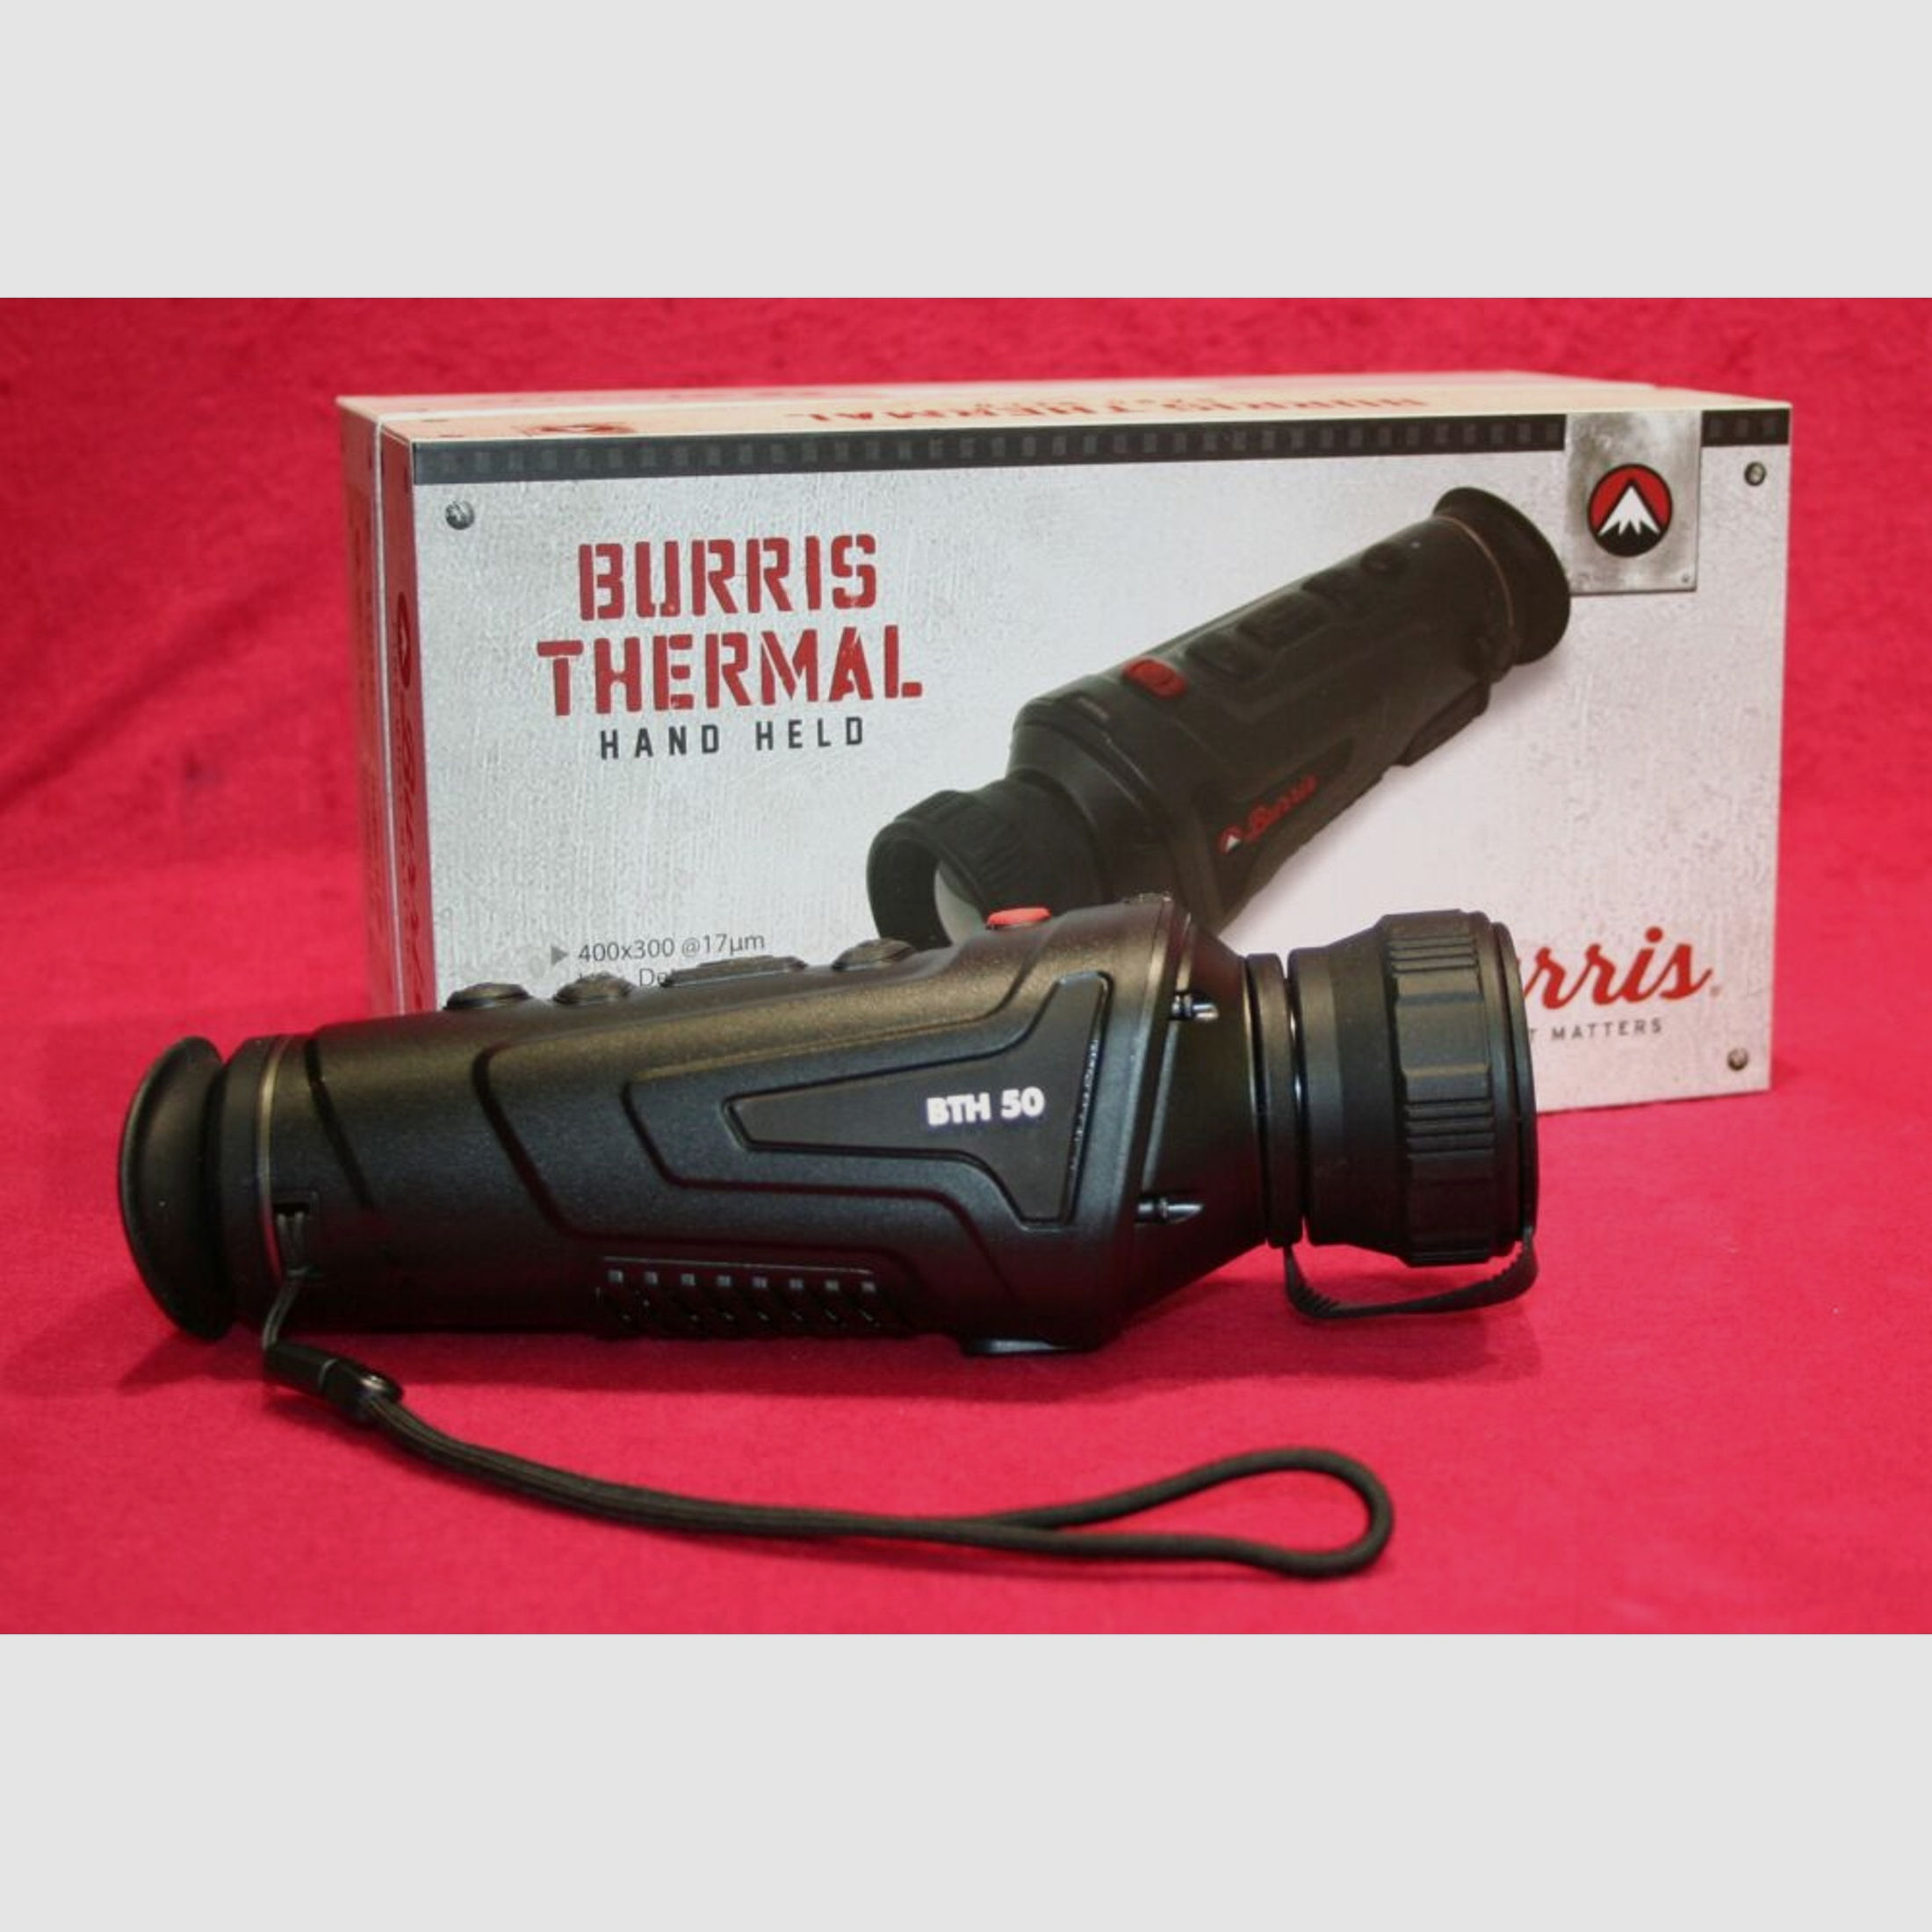 Burris Thermal	 Burris Thermal Handheld 50